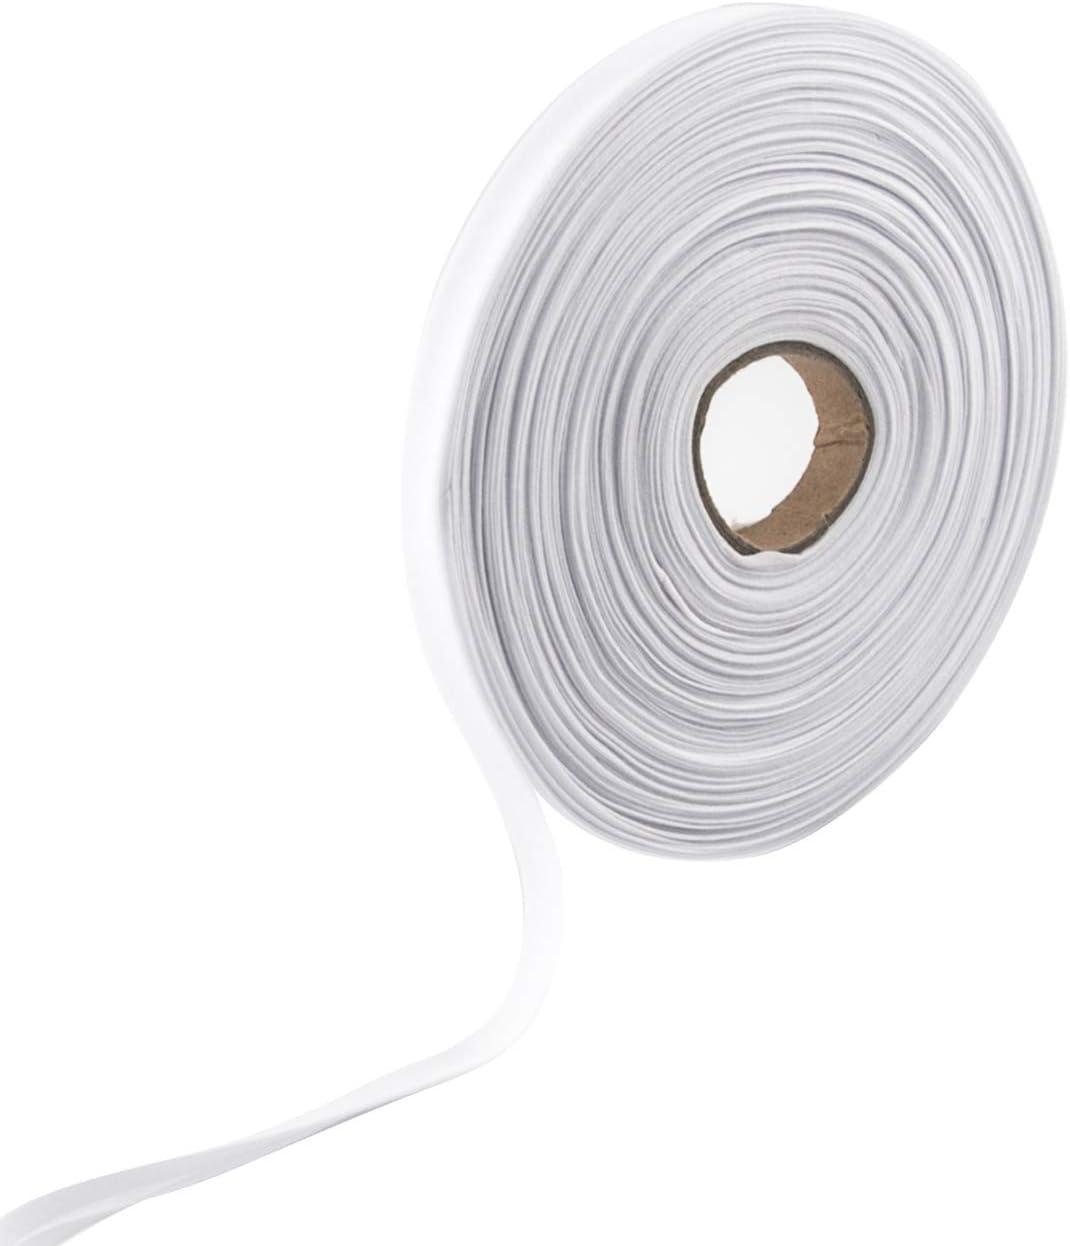 WXJ13 Single Fold Bias Tape 1/2 Inch Bias Binding Tape Hemming Tape for Carpet  Edges DIY Crafts Seaming Sewing Piping Quilting (White 50 Yards)